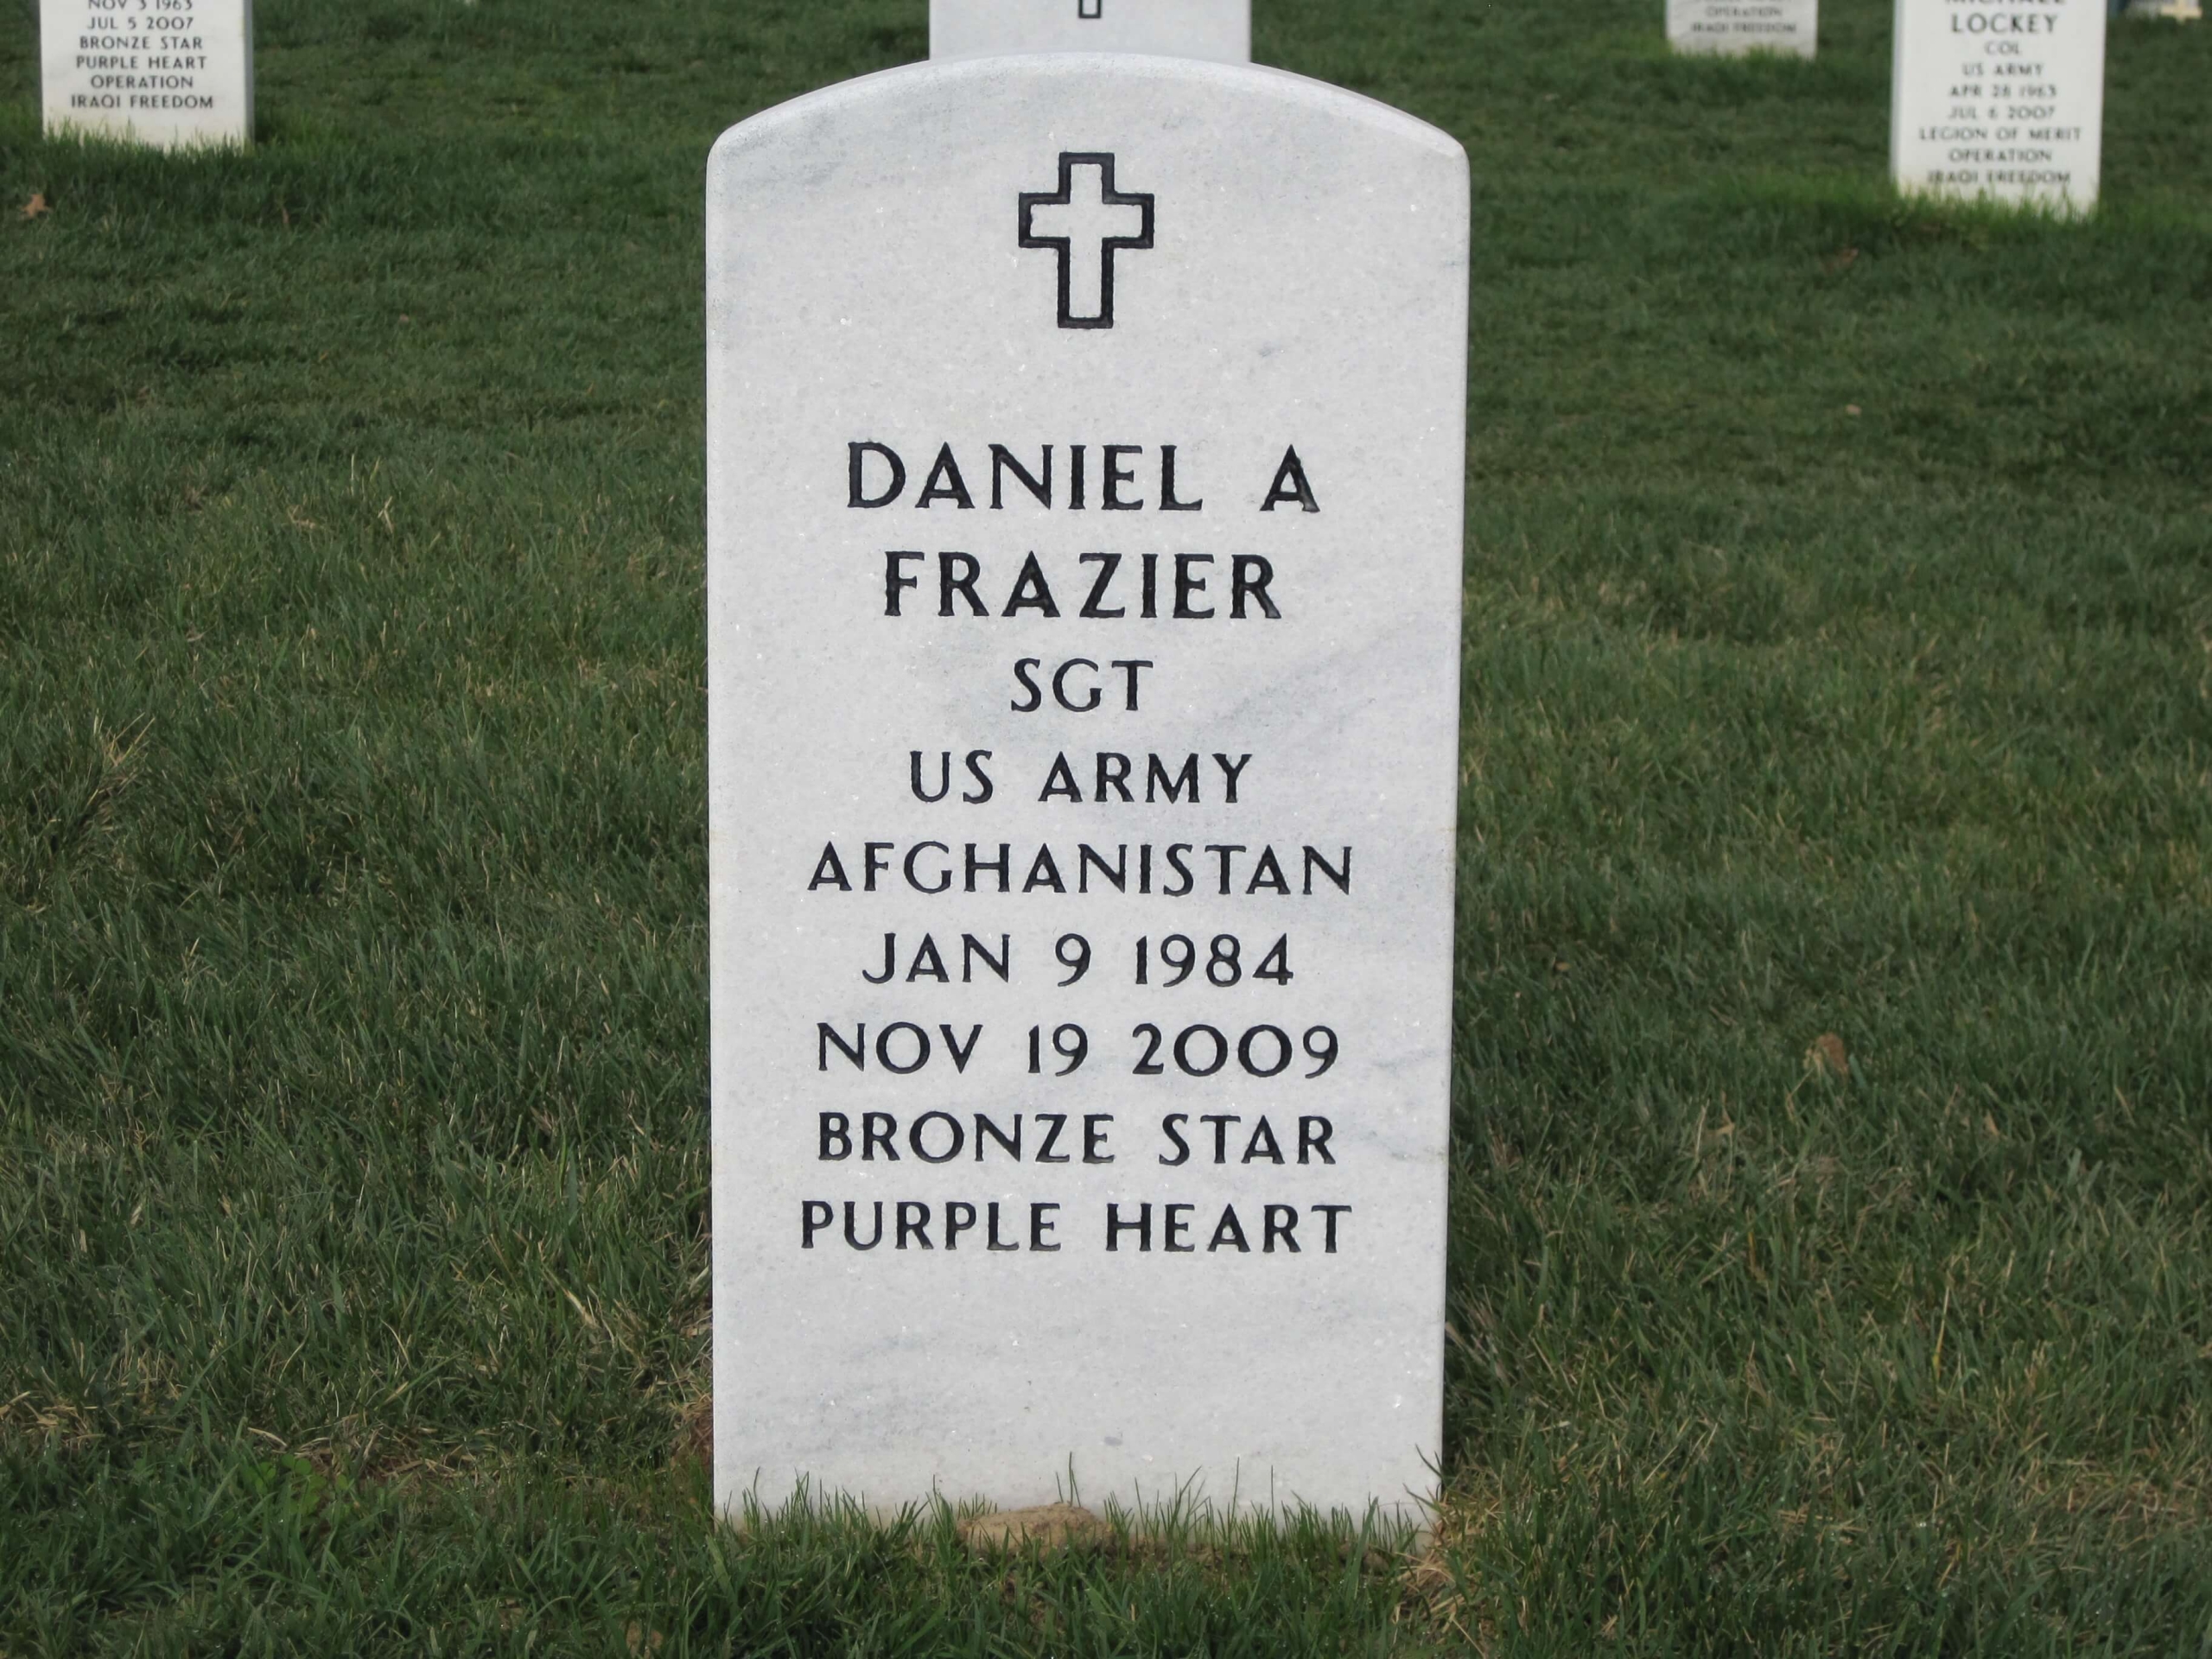 dafrazier-gravesite-photo-by-eileen-horan-april-2010-02